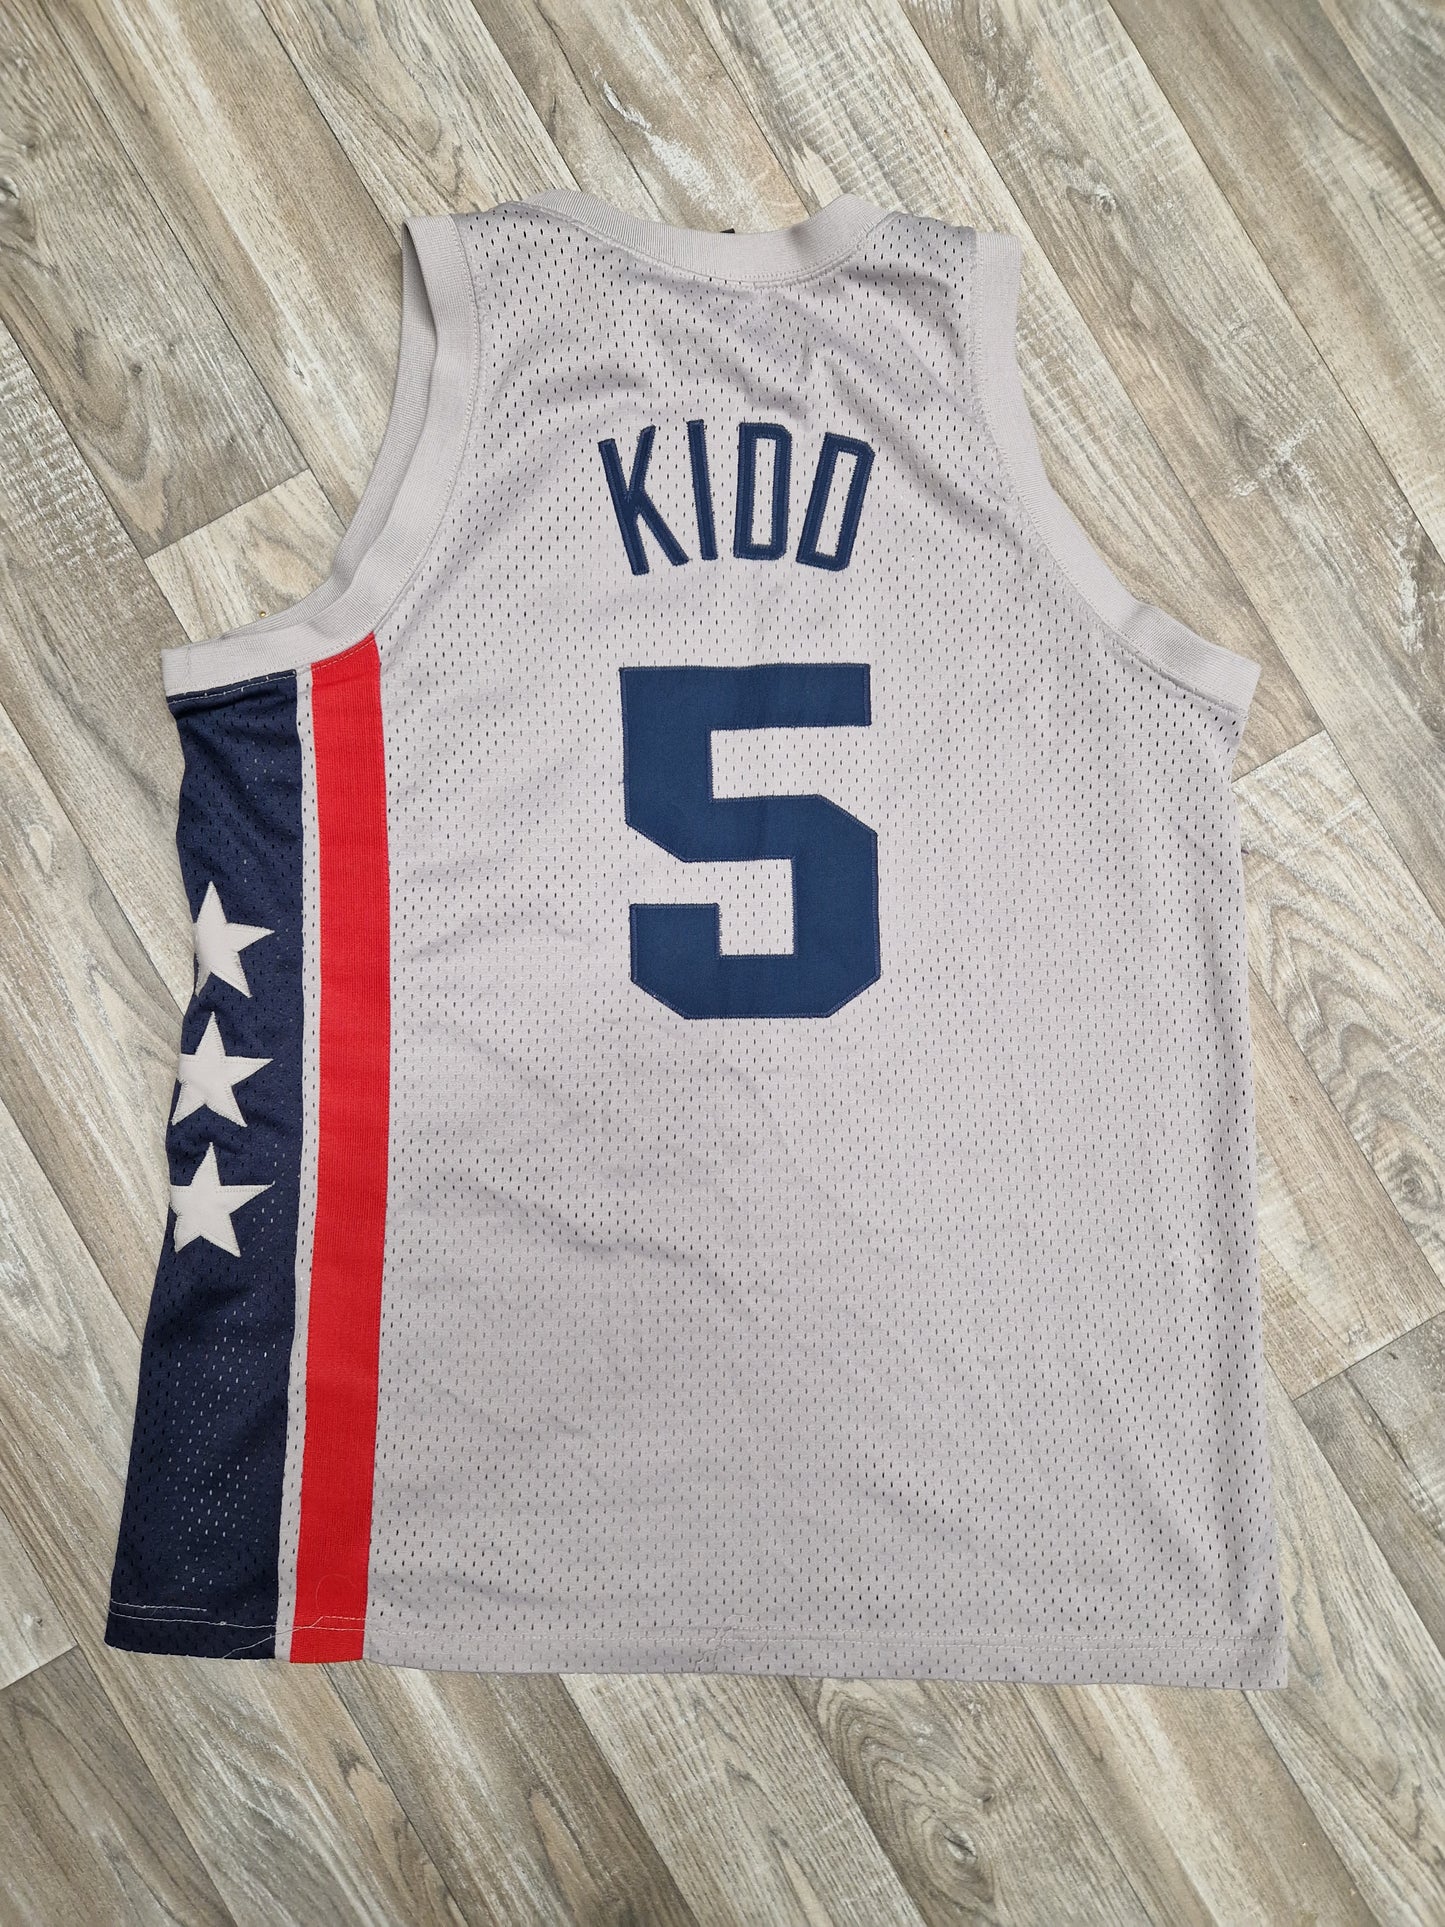 Jason Kidd New Jersey Nets Jersey Size Medium